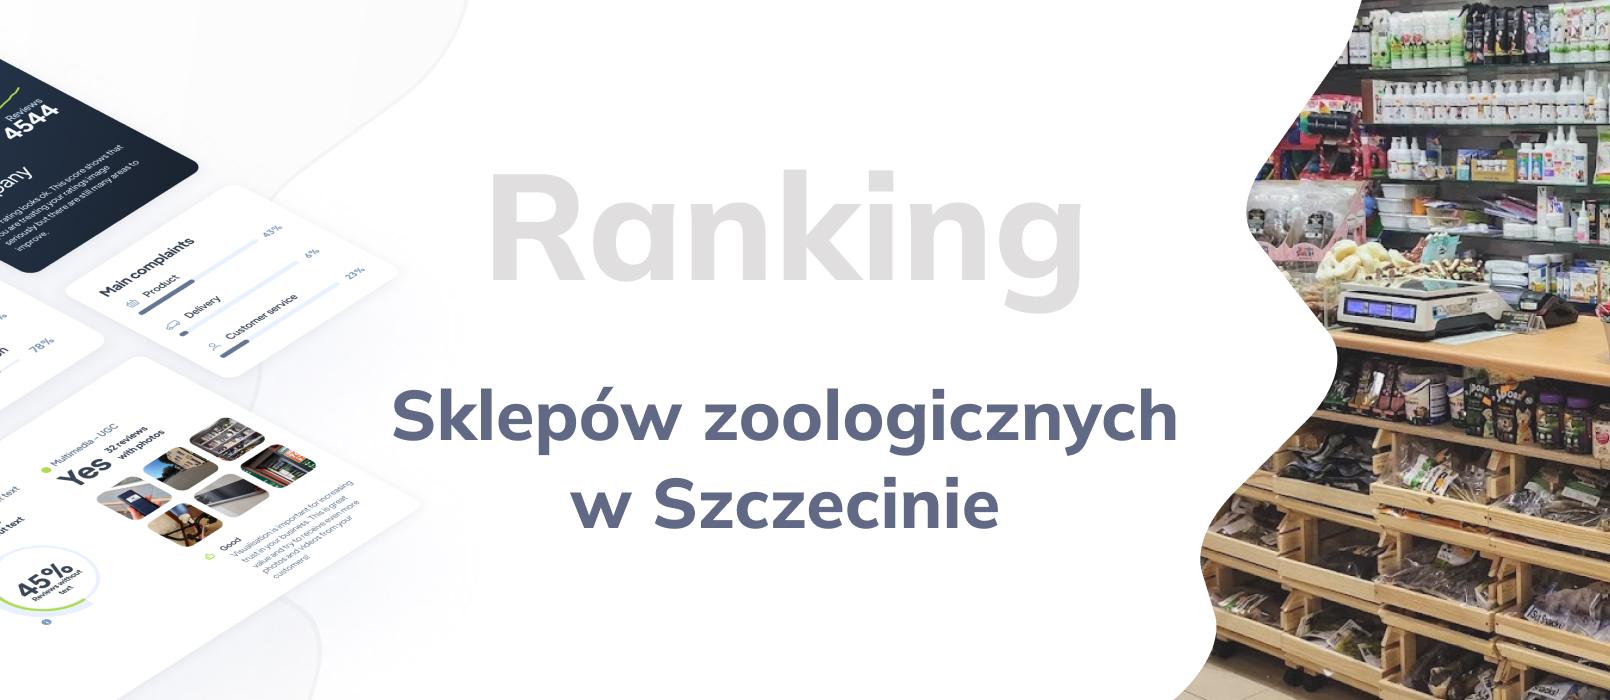 Sklep zoologiczny w Szczecinie - ranking TOP 10